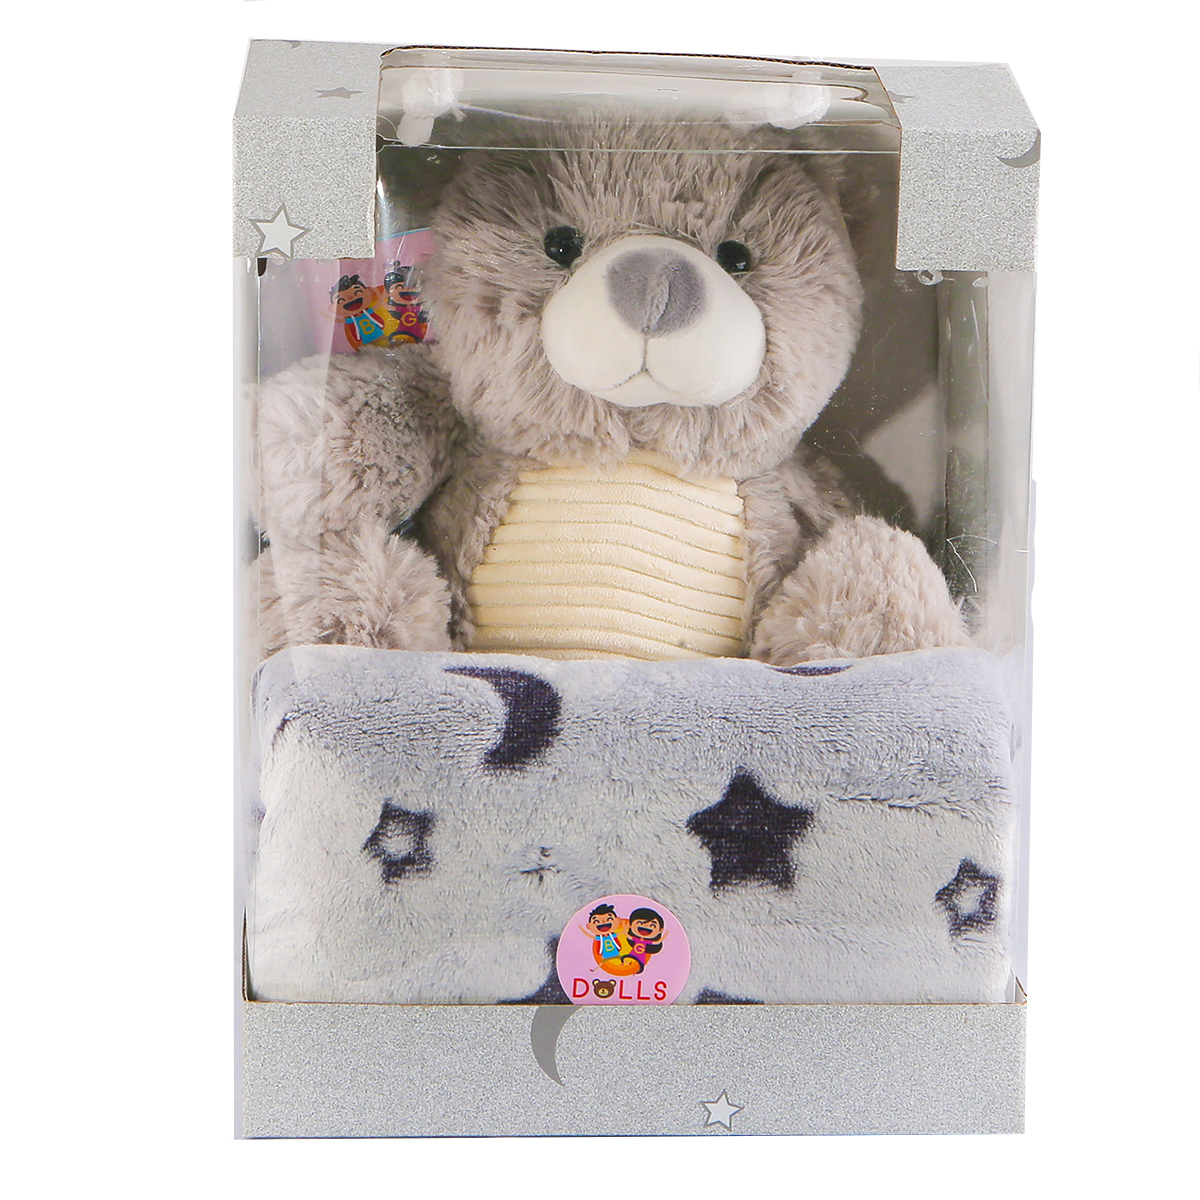 ست هدیه عروسک بی جی دالز مدل خرس کد BG11543